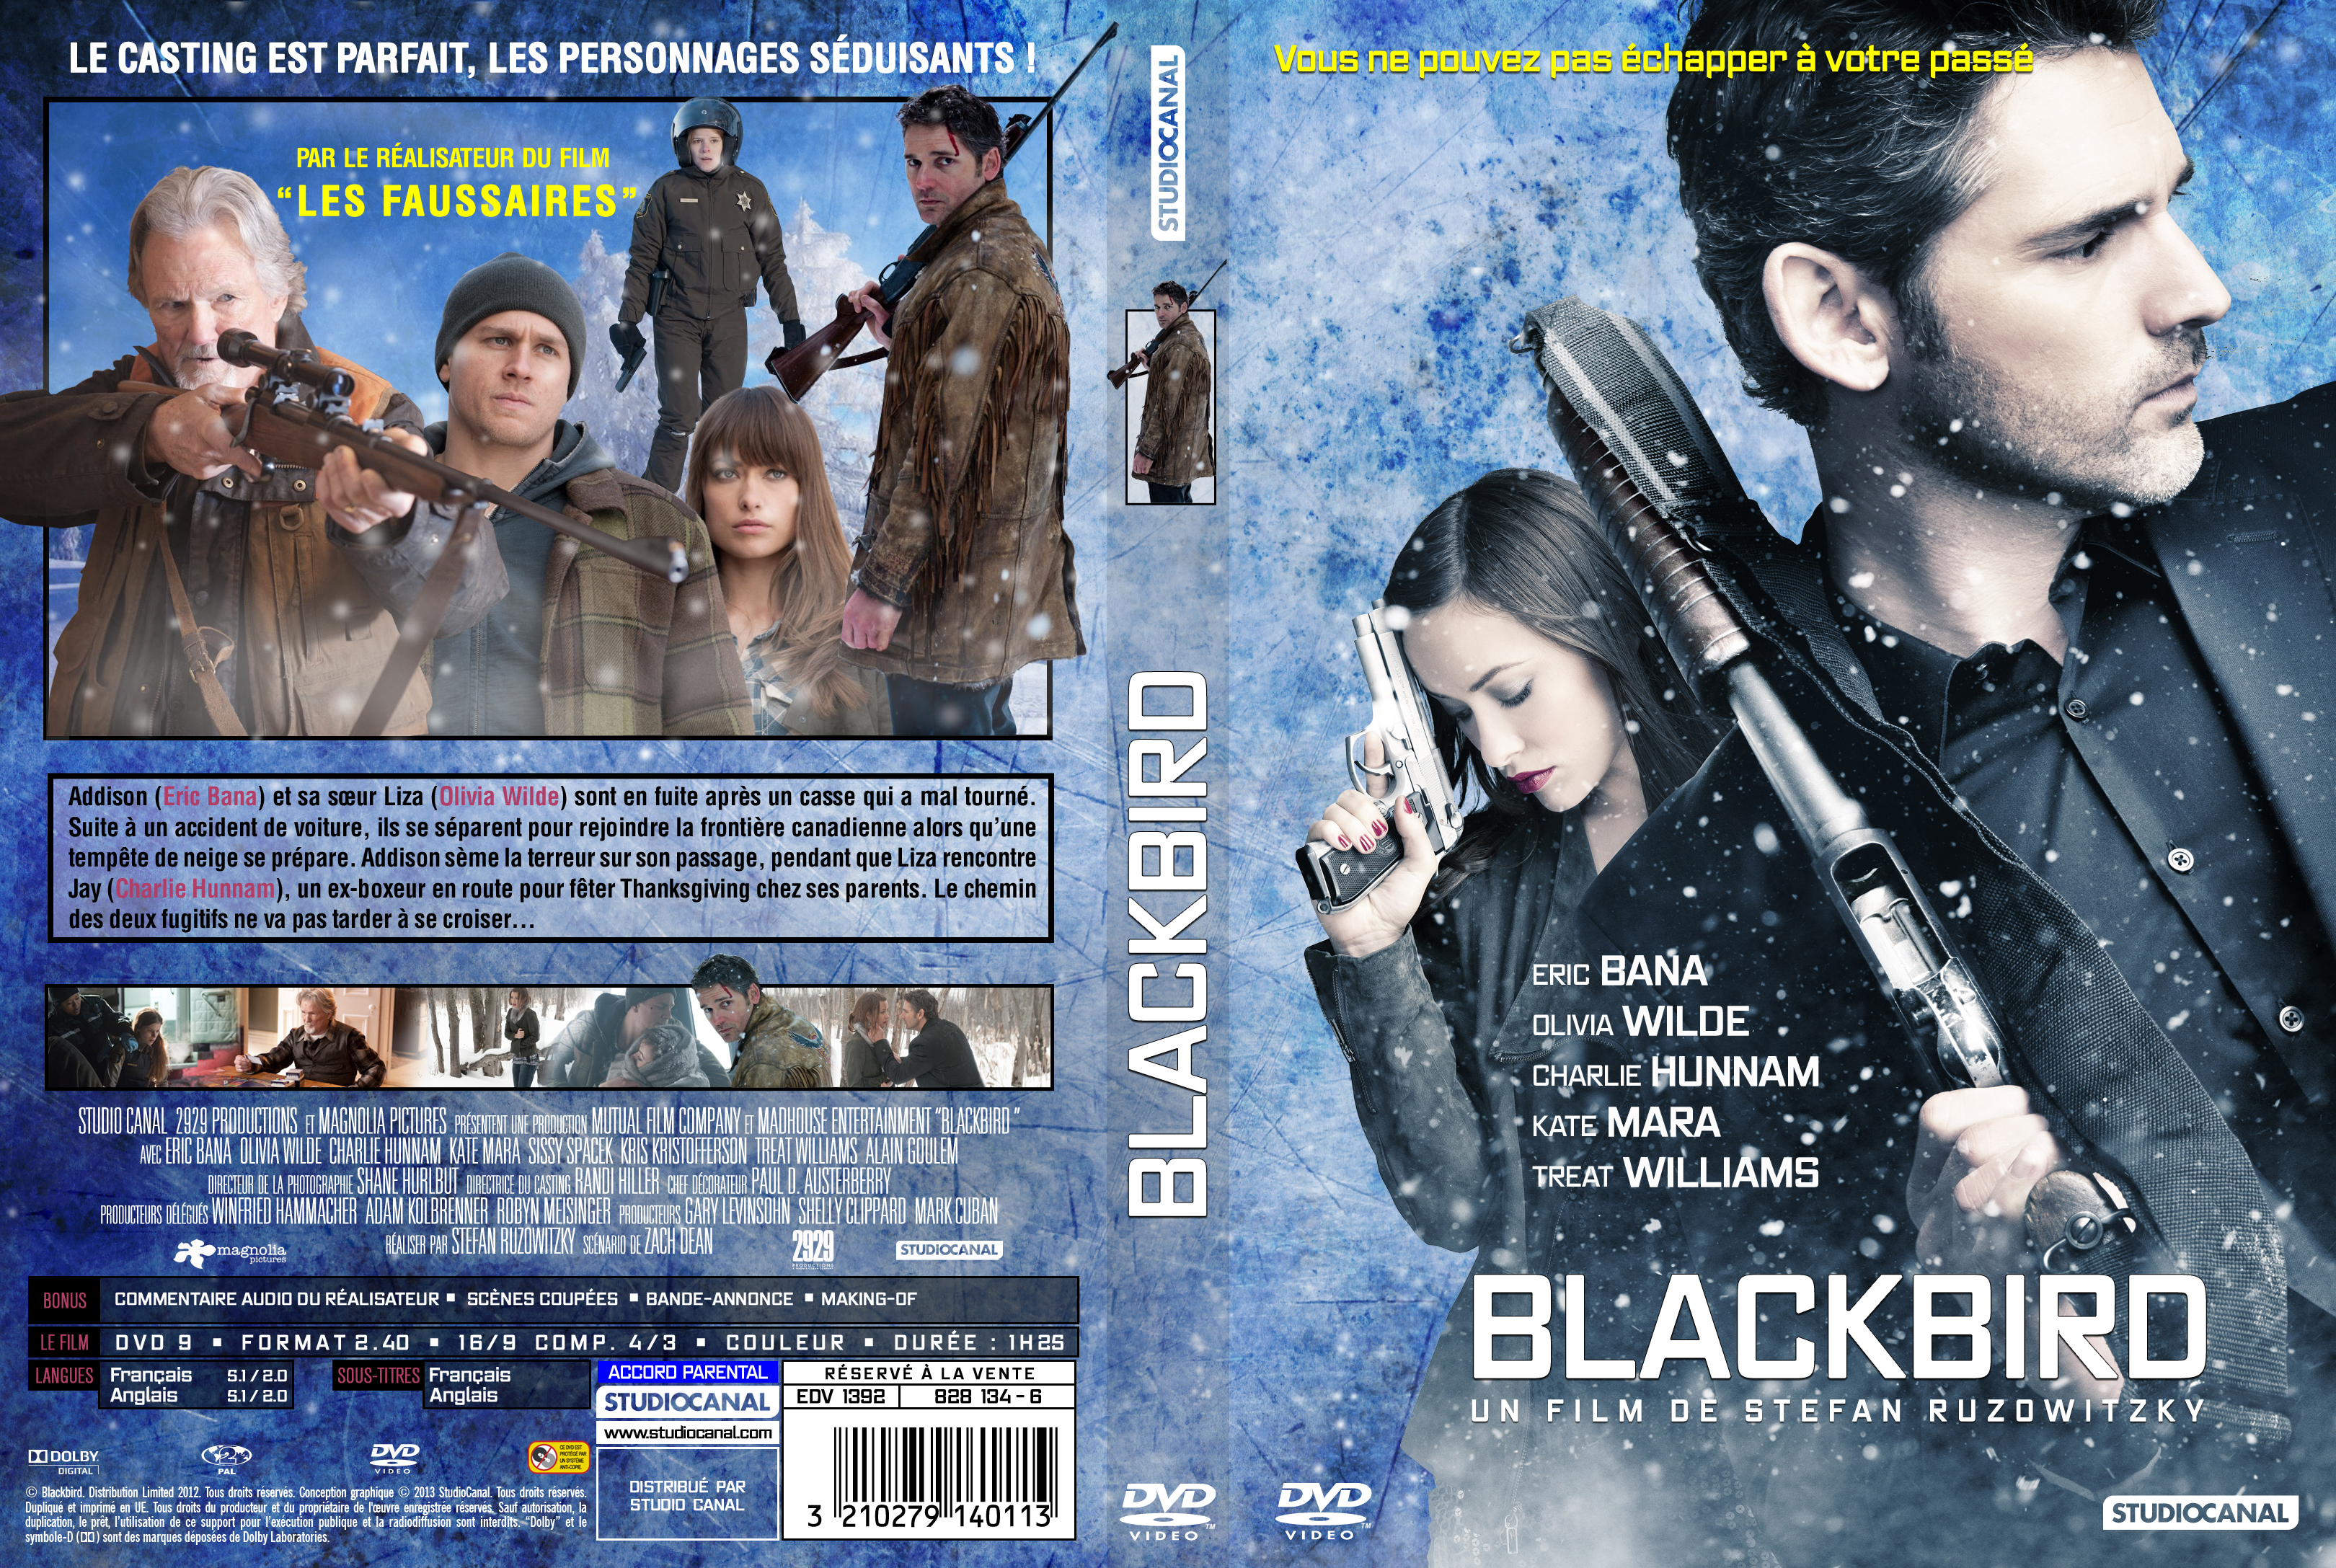 Jaquette DVD Blackbird custom v2